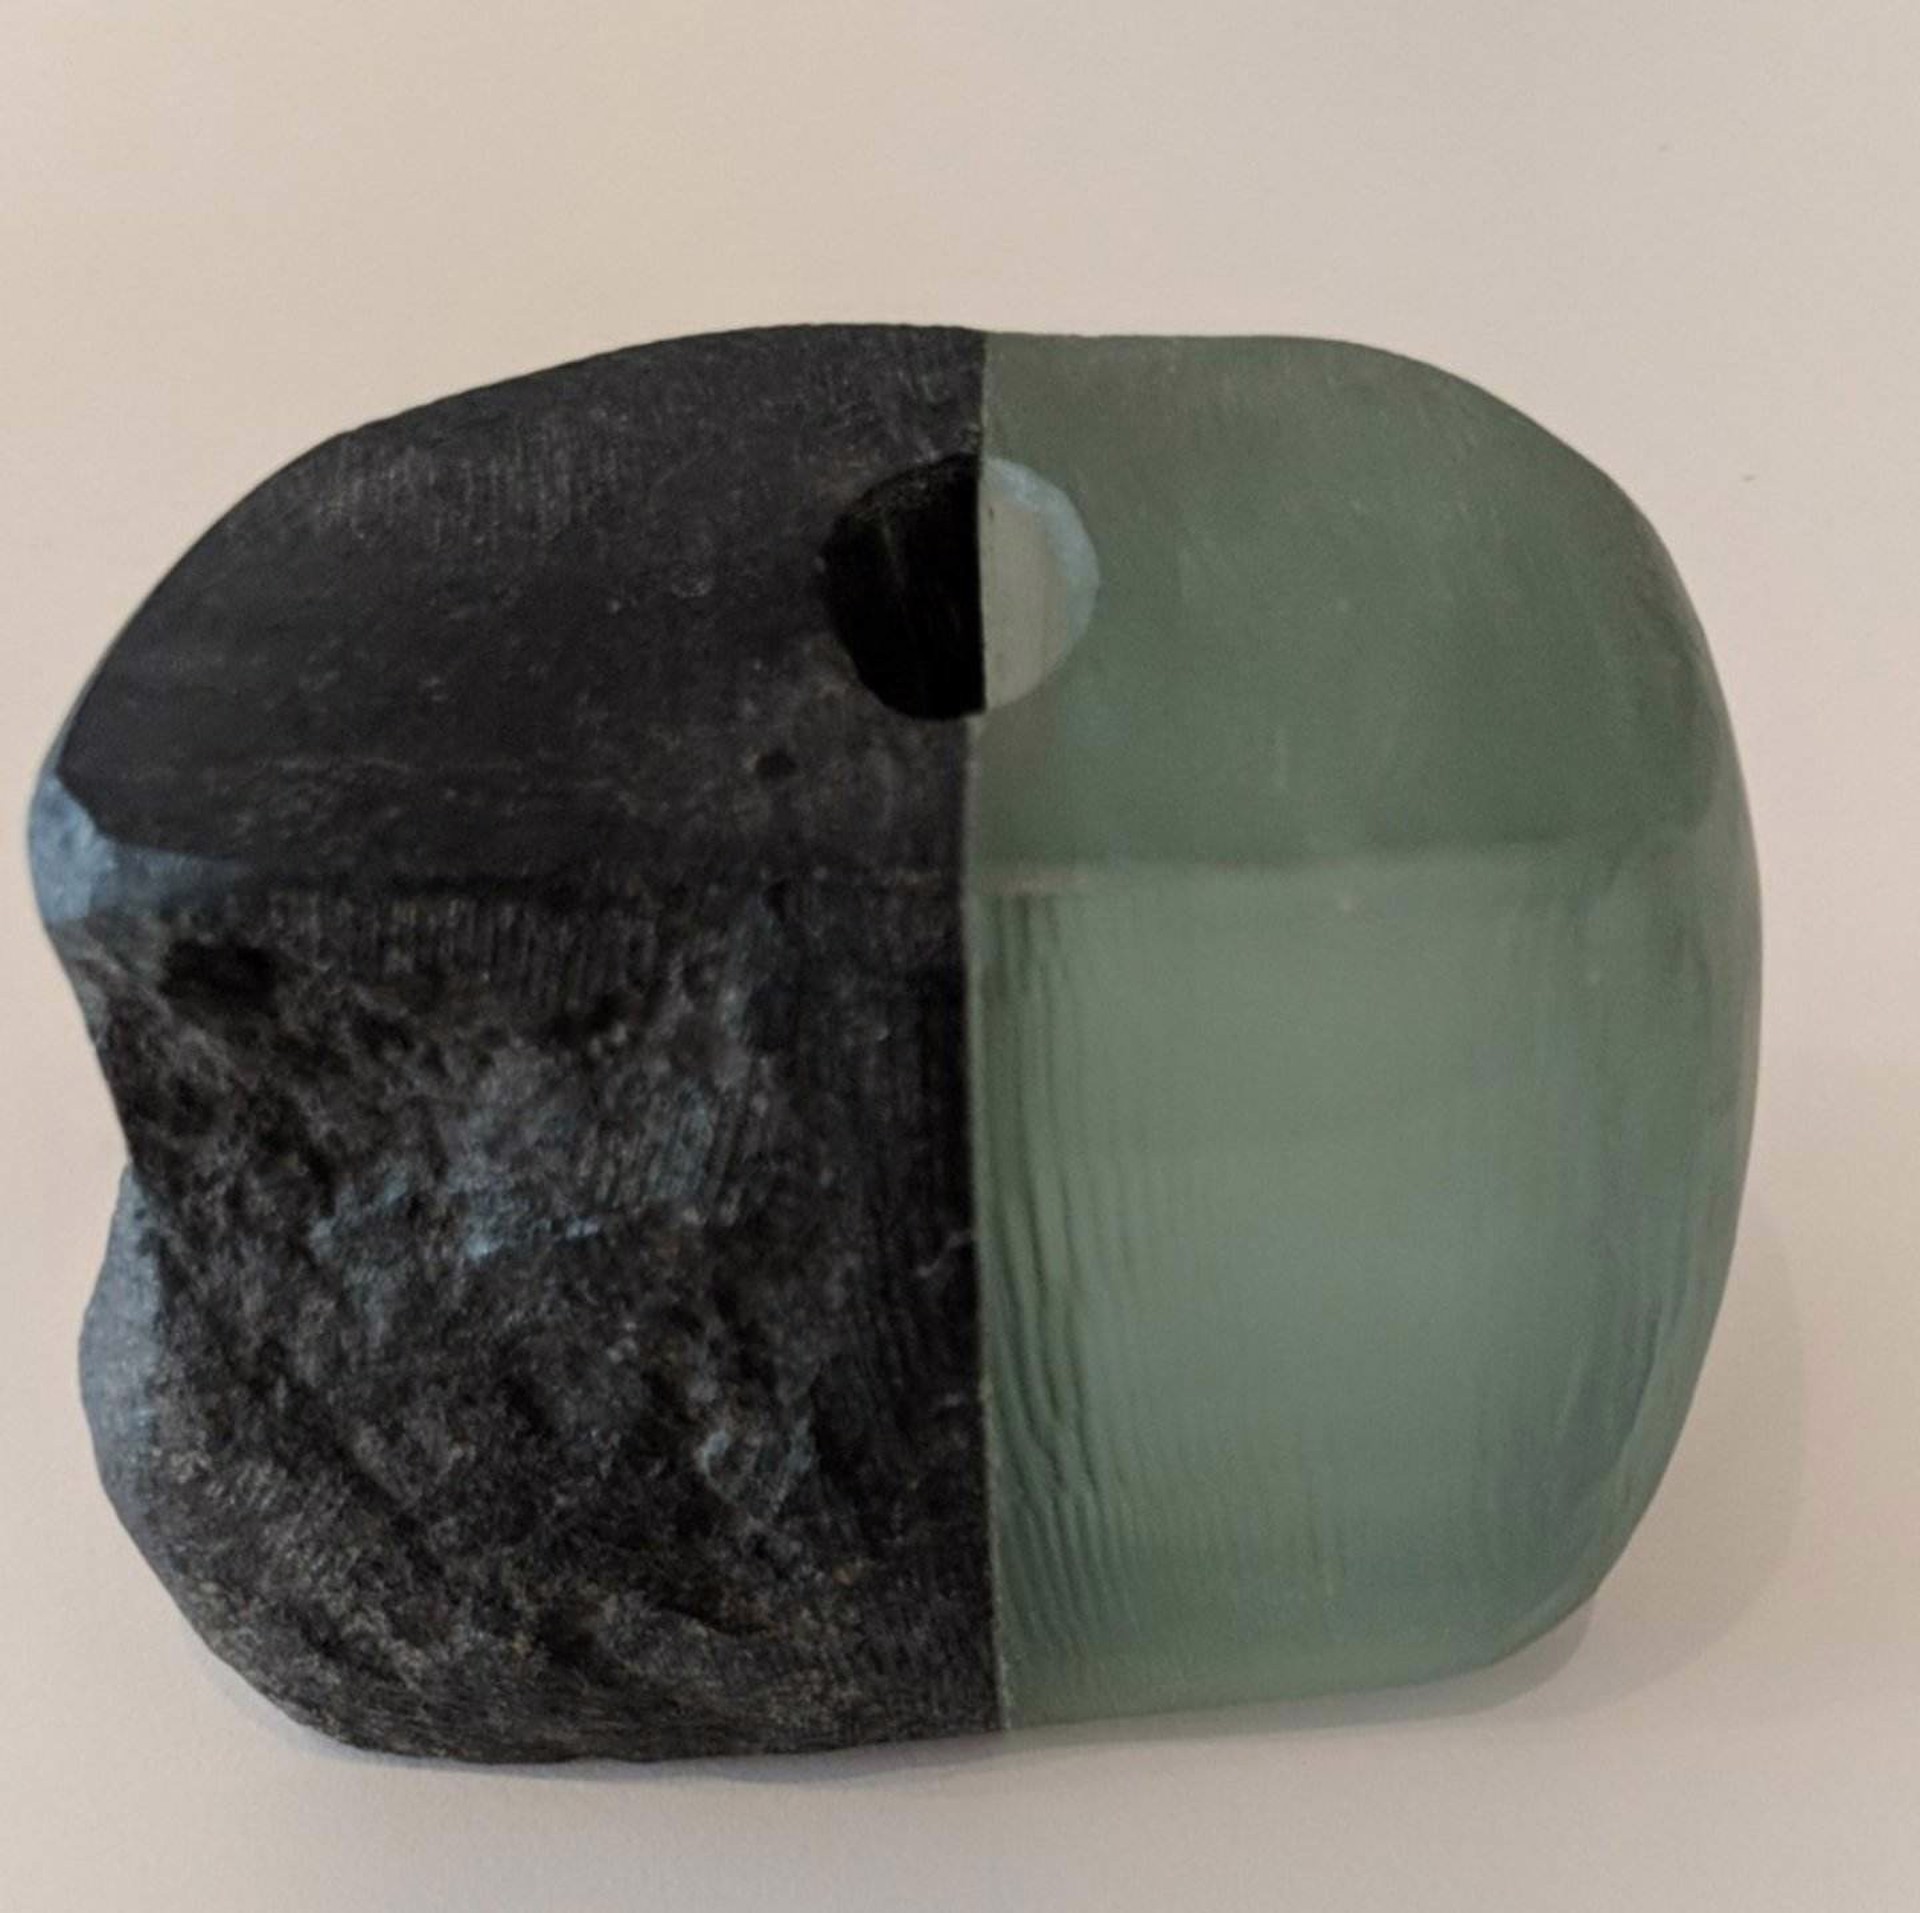 Medium Glass and Stone Vase #6 by Christy Haldane